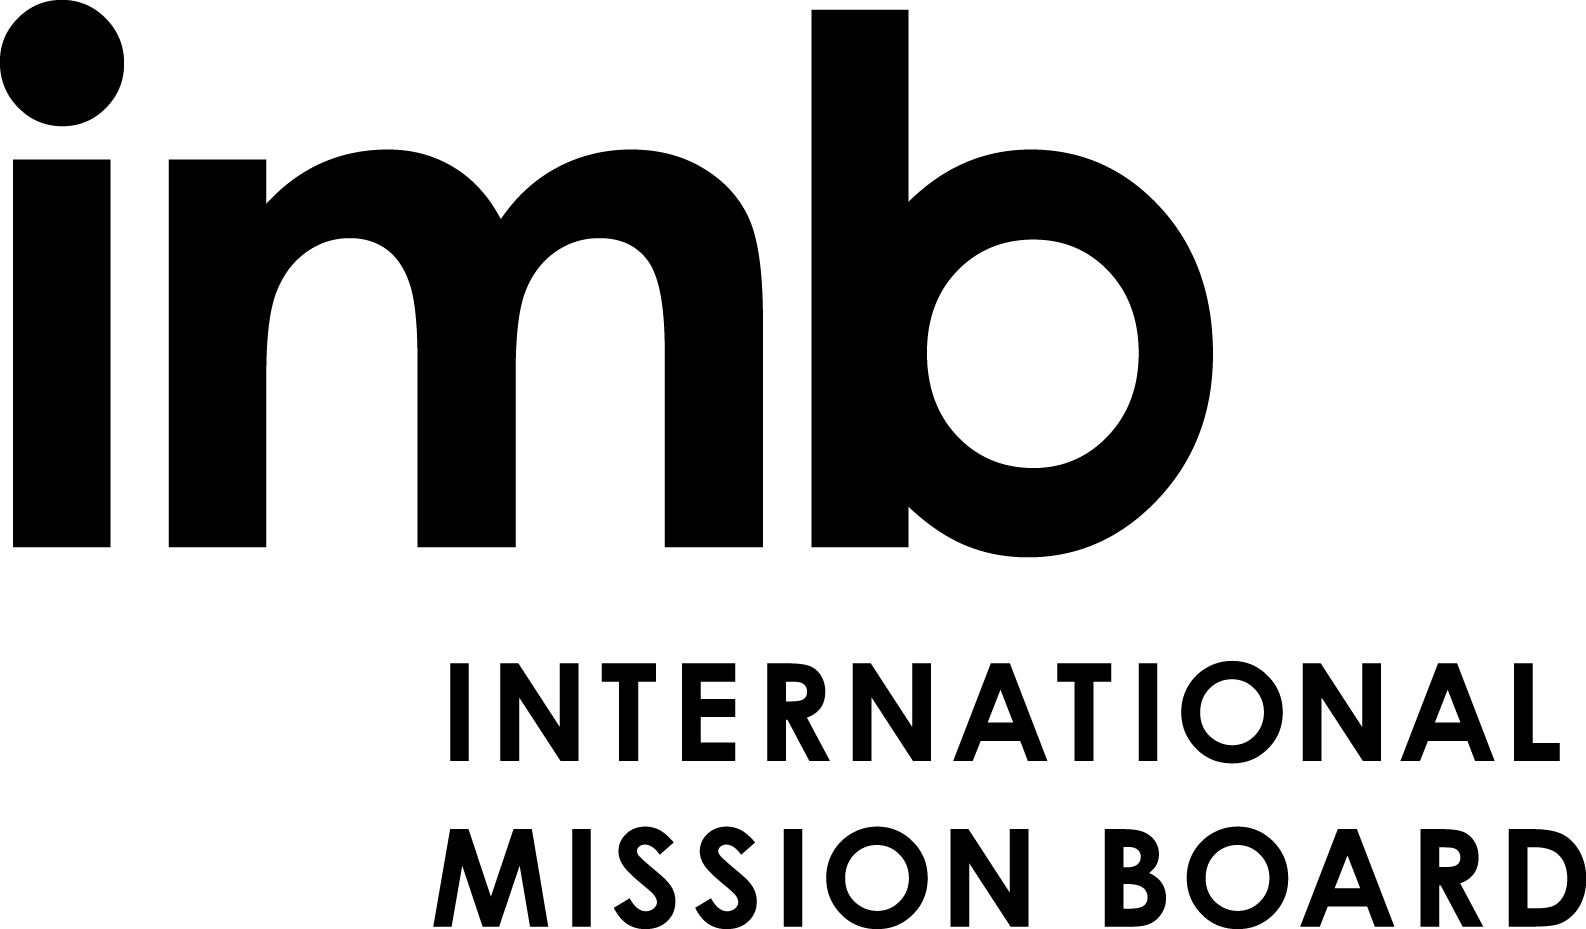 IMB Logo - Press Images and IMB Logos - International Mission Board